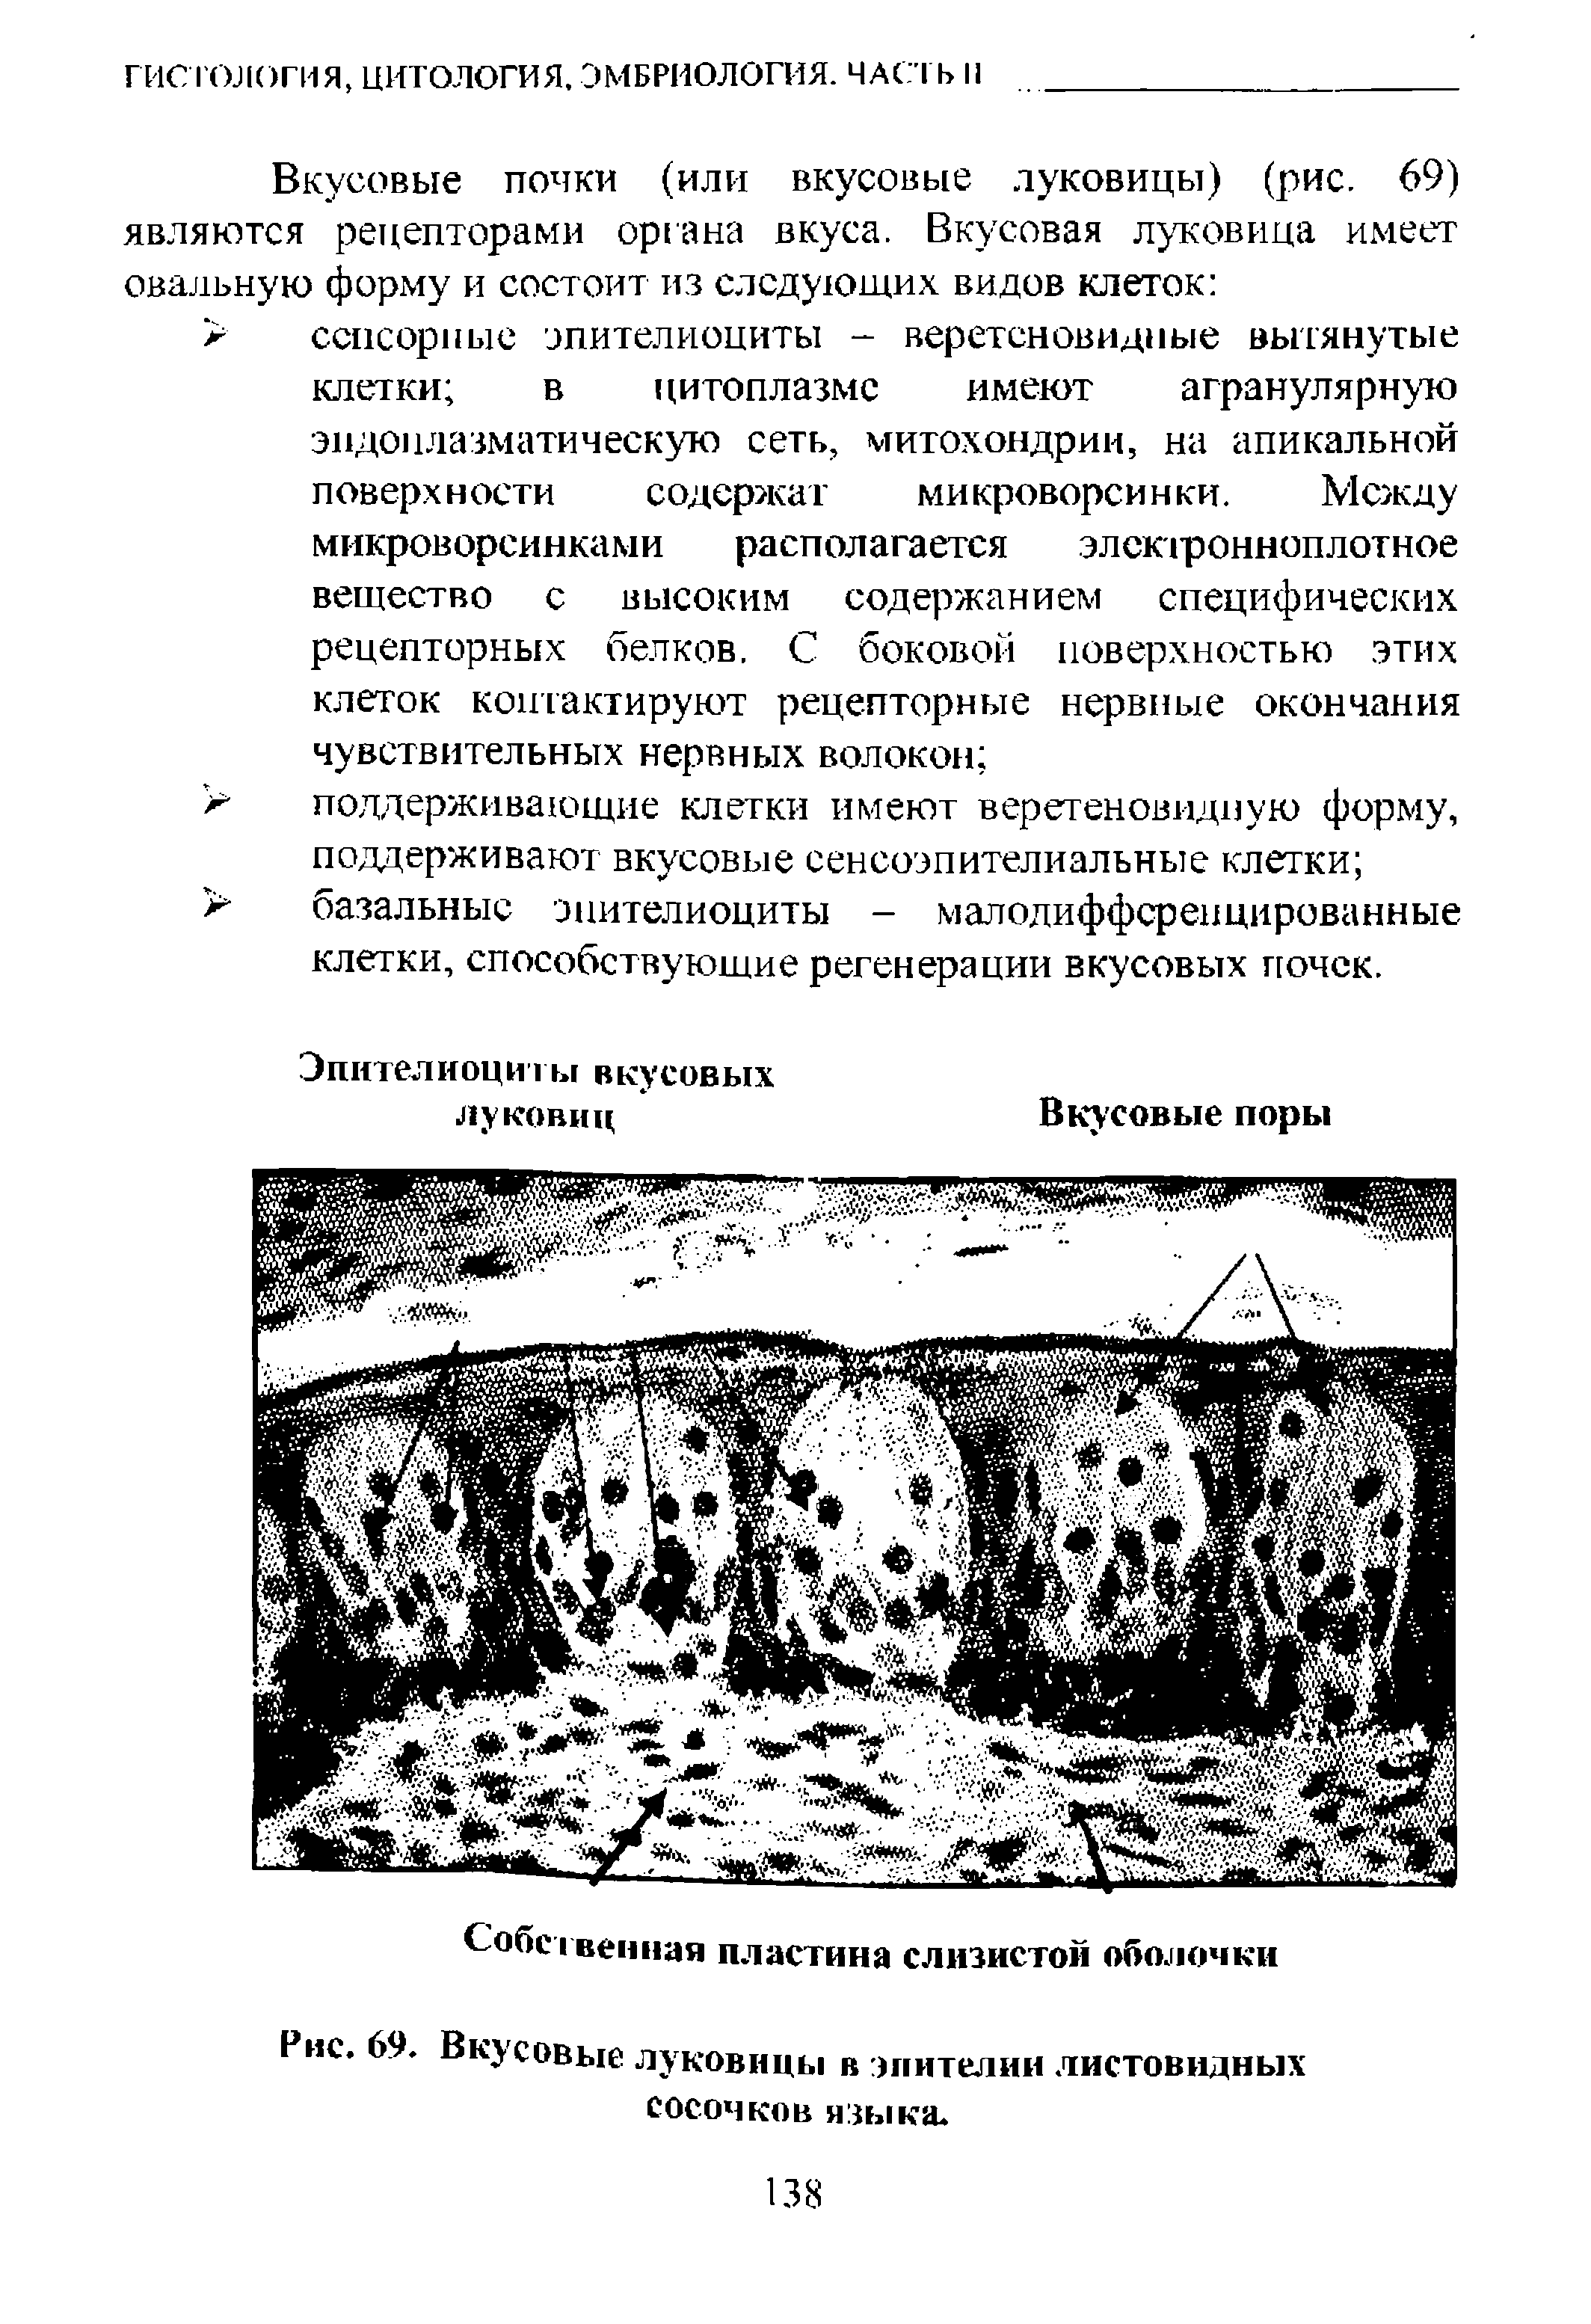 Рис. 69. Вкусовые луковицы в эпителии листовидных сосочков языка.